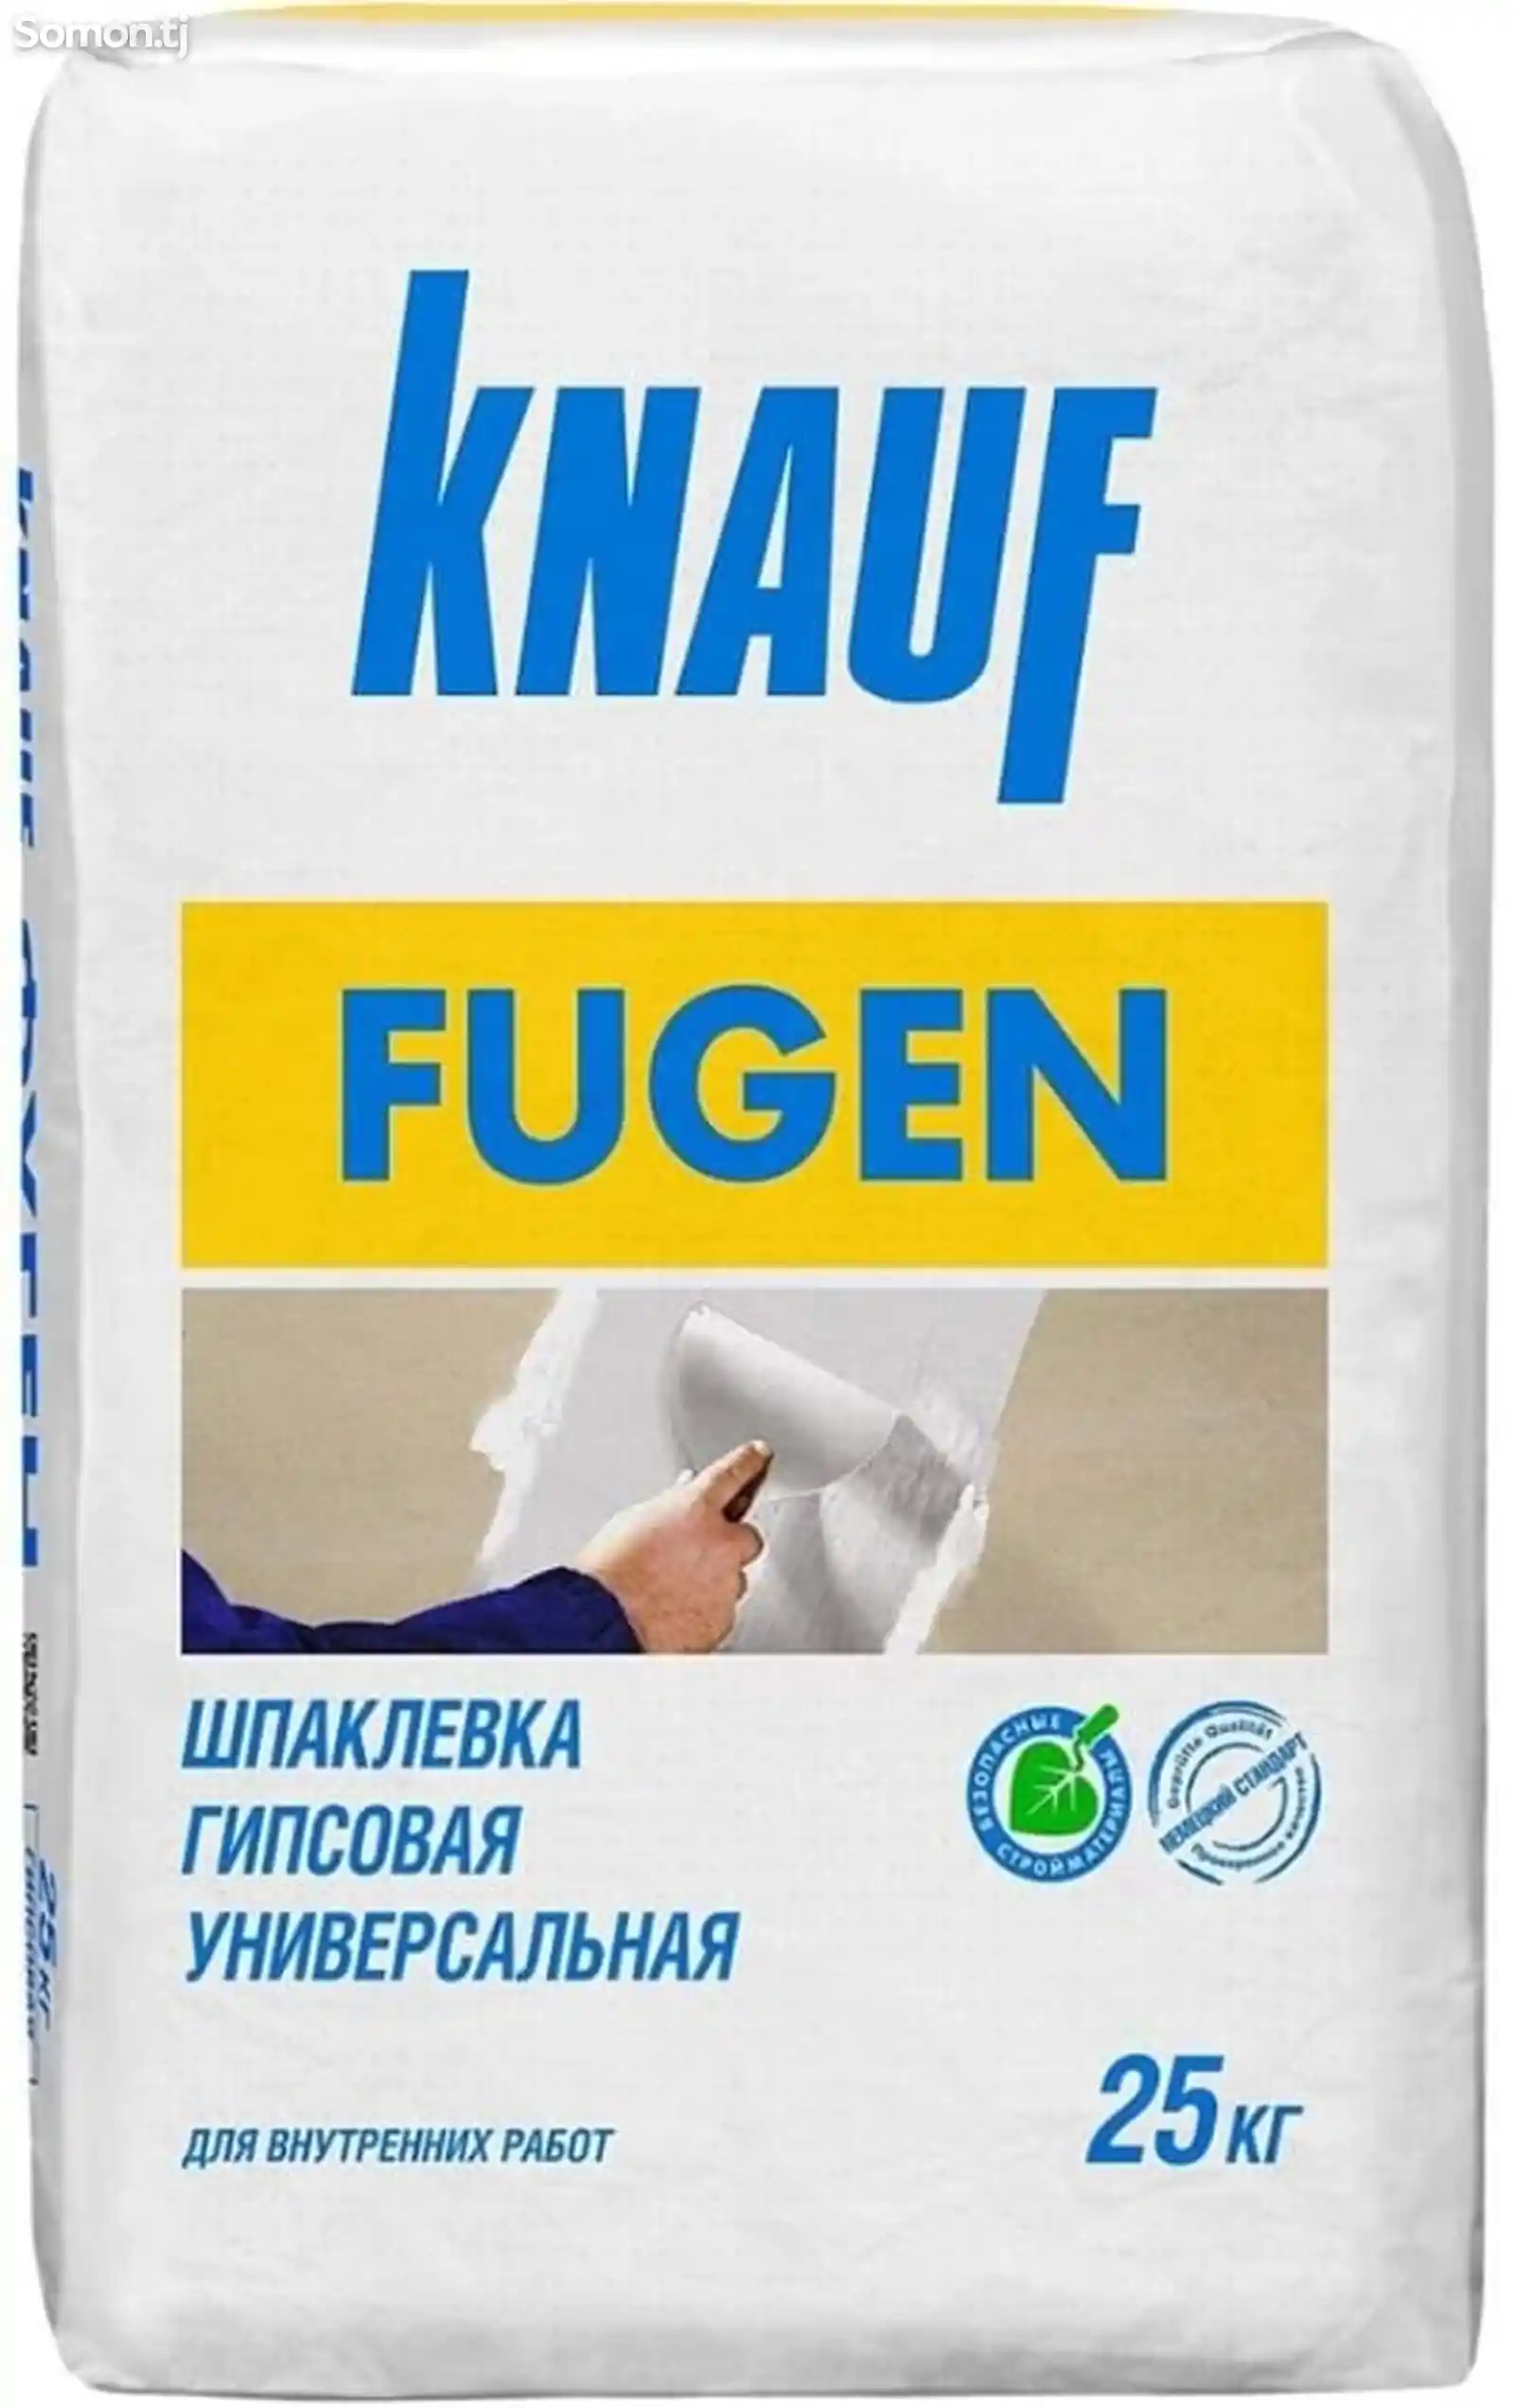 Шпаклевка Fugen knauf-1